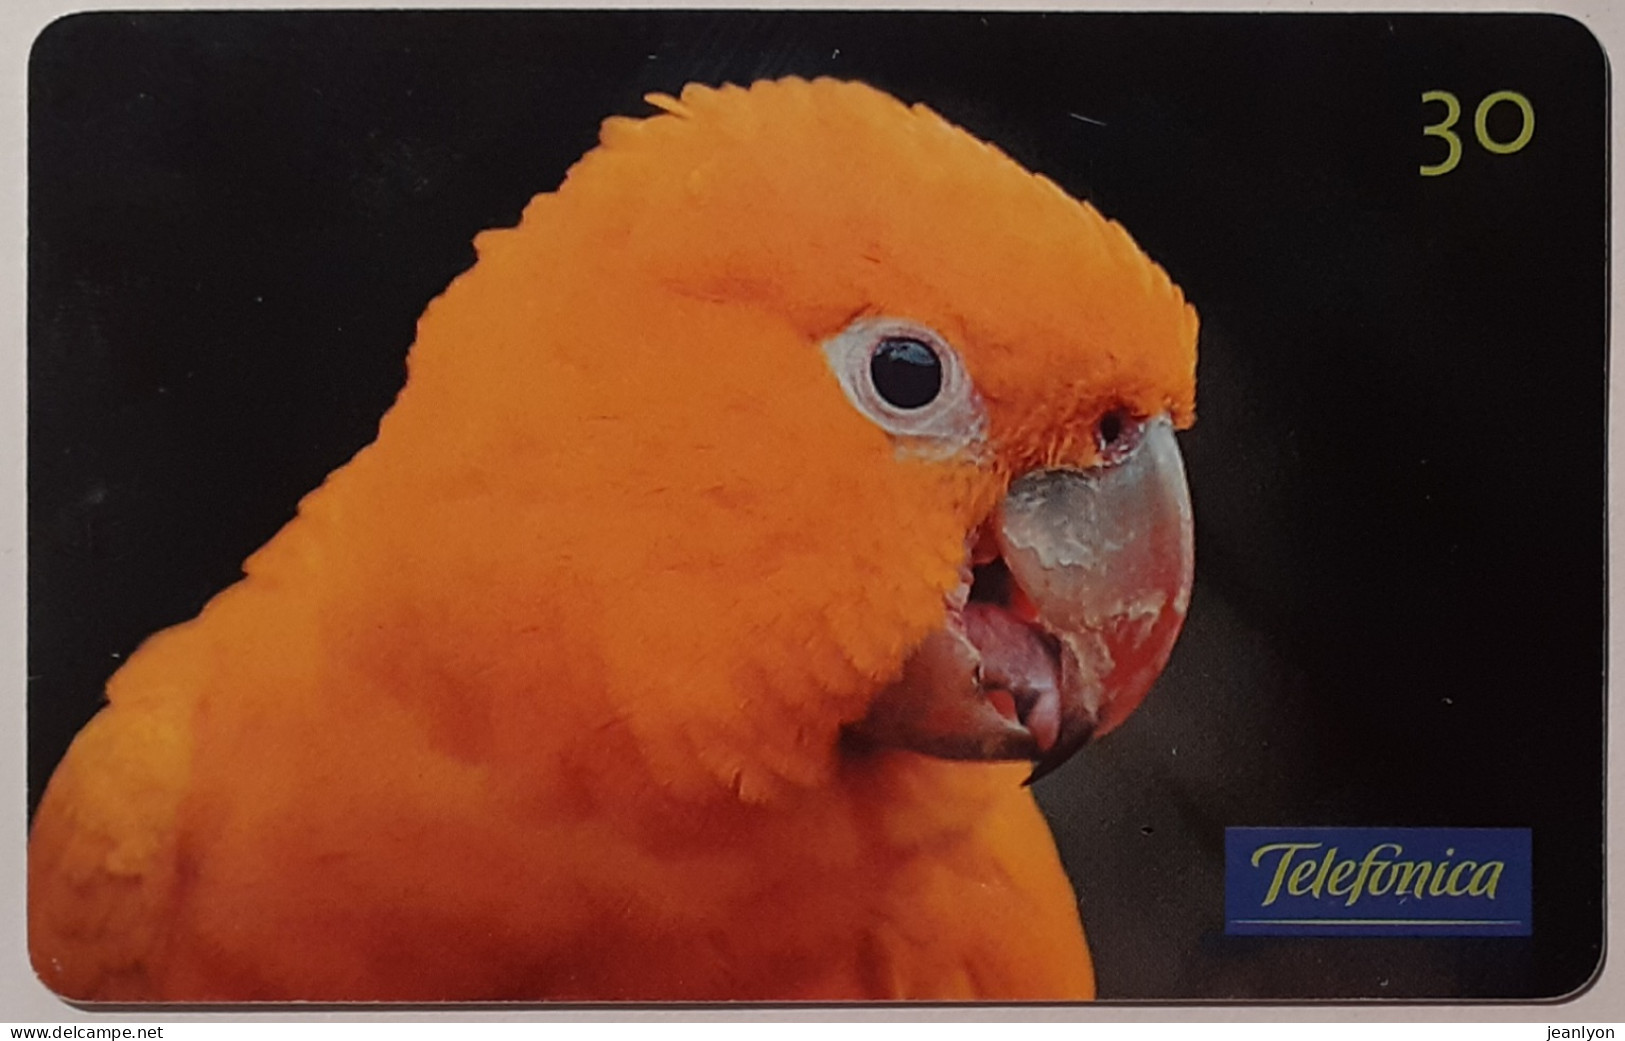 OISEAU / ARARAJUBA - PERROQUET BRESIL - Carte Téléphone Magnétique TELEFONICA - Parrots